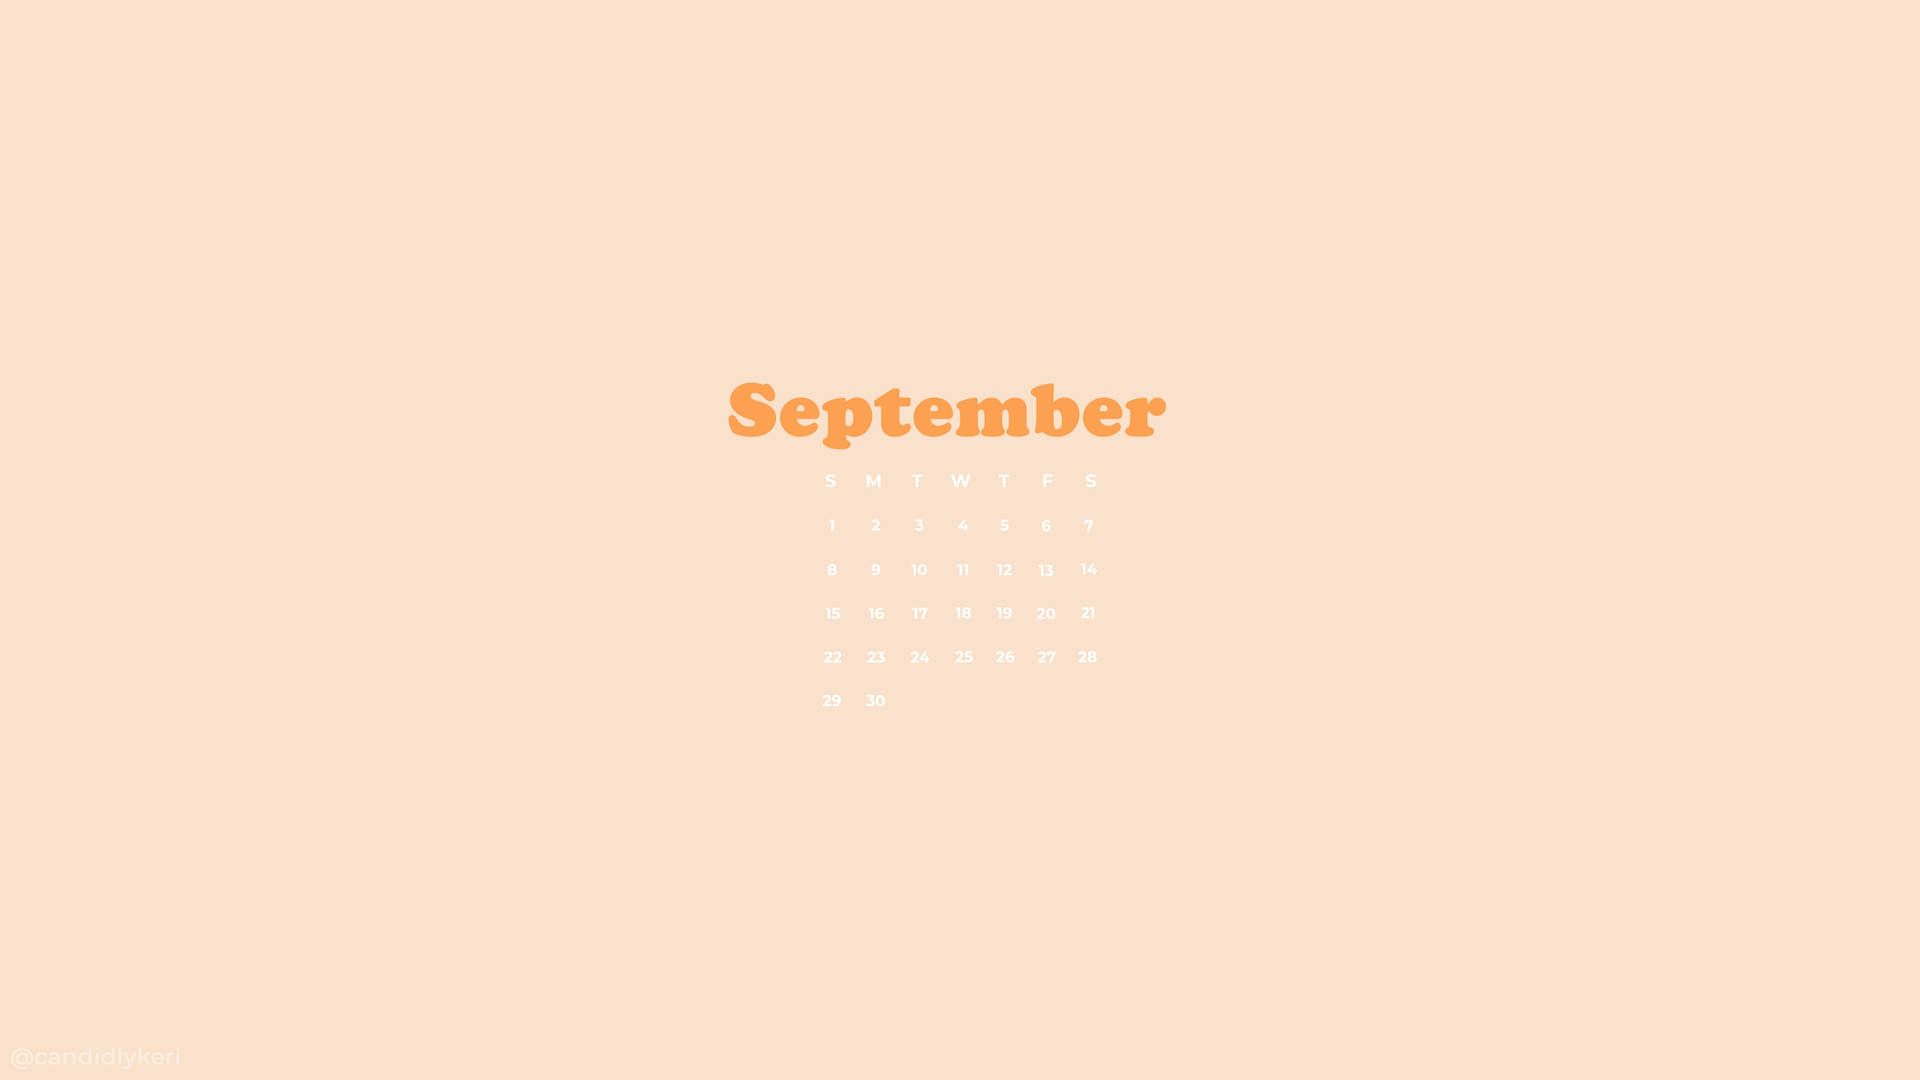 September 2020 calendar wallpaper for your tech devices in light orange color - September